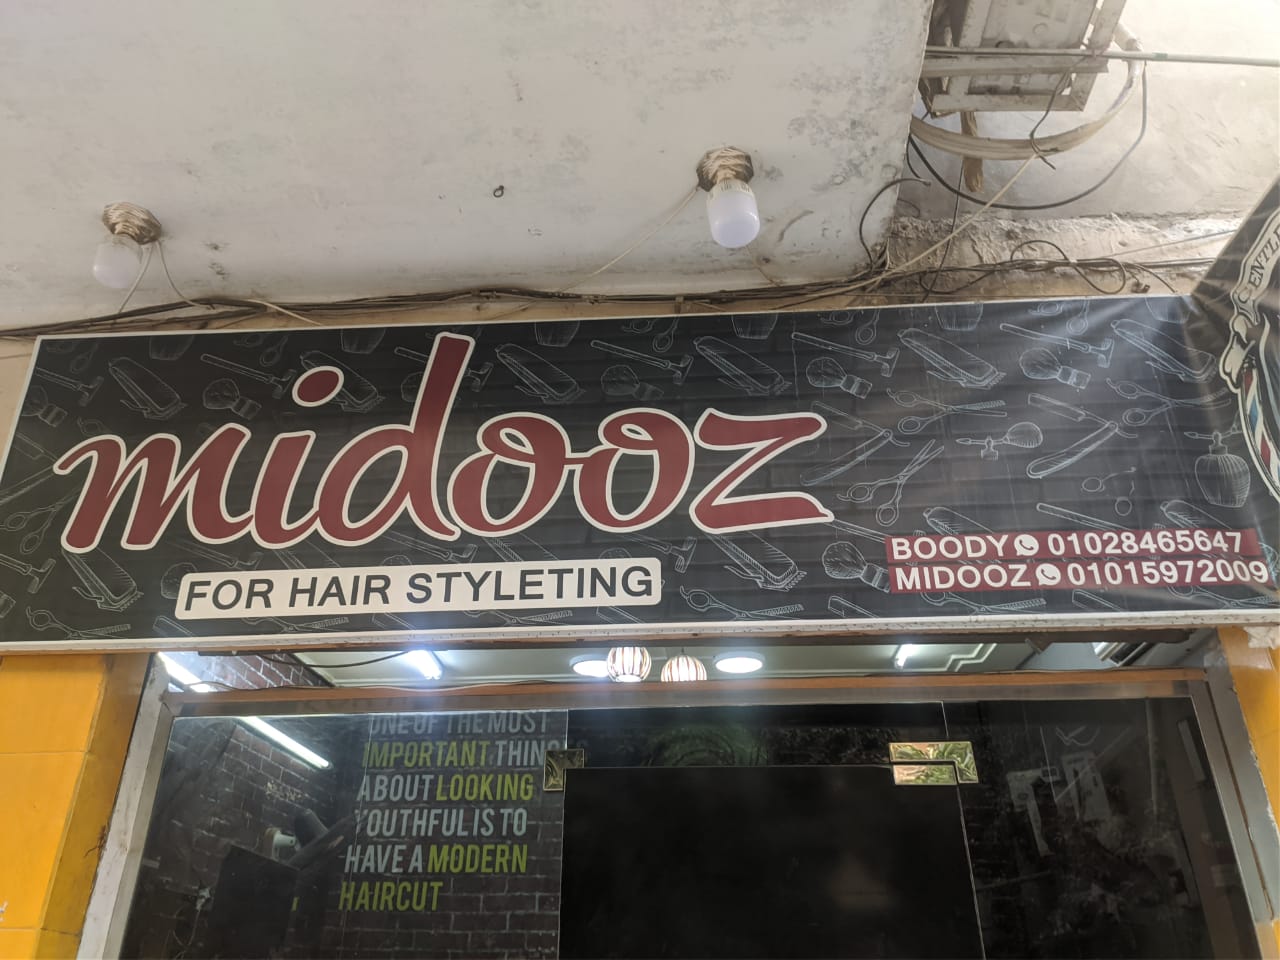 Midooz hair styleting